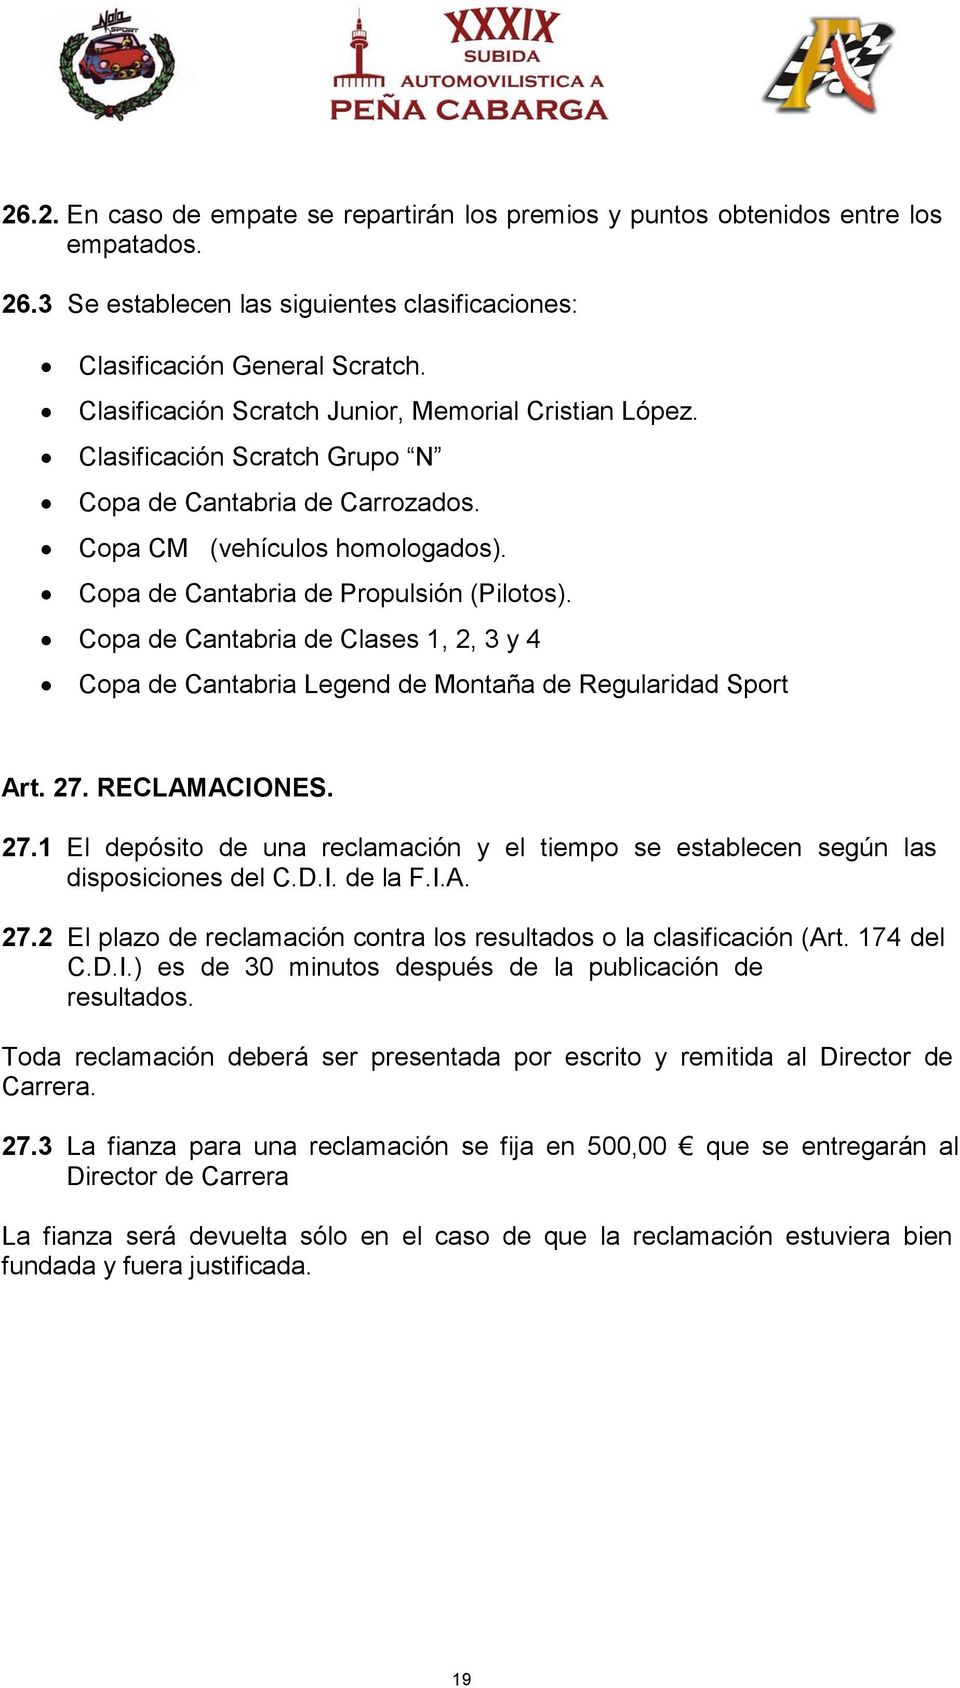 Copa de Cantabria de Clases 1, 2, 3 y 4 Copa de Cantabria Legend de Montaña de Regularidad Sport Art. 27. RECLAMACIONES. 27.1 El depósito de una reclamación y el tiempo se establecen según las disposiciones del C.